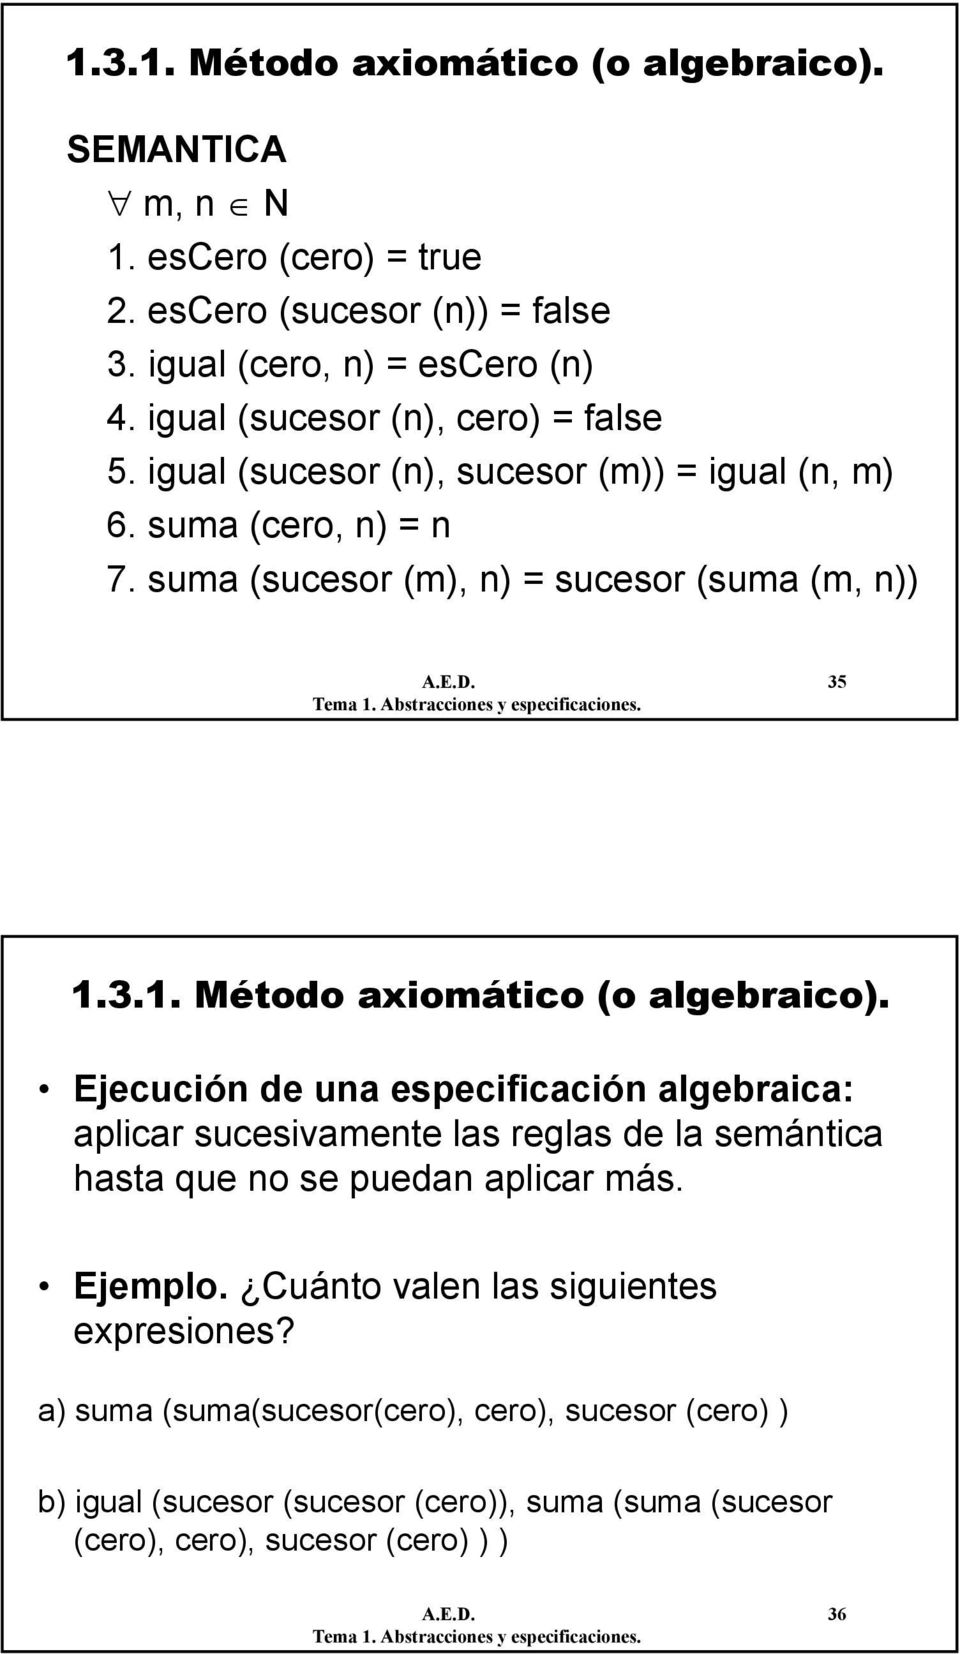 3.1. Método axiomático (o algebraico). Ejecución de una especificación algebraica: aplicar sucesivamente las reglas de la semántica hasta que no se puedan aplicar más.